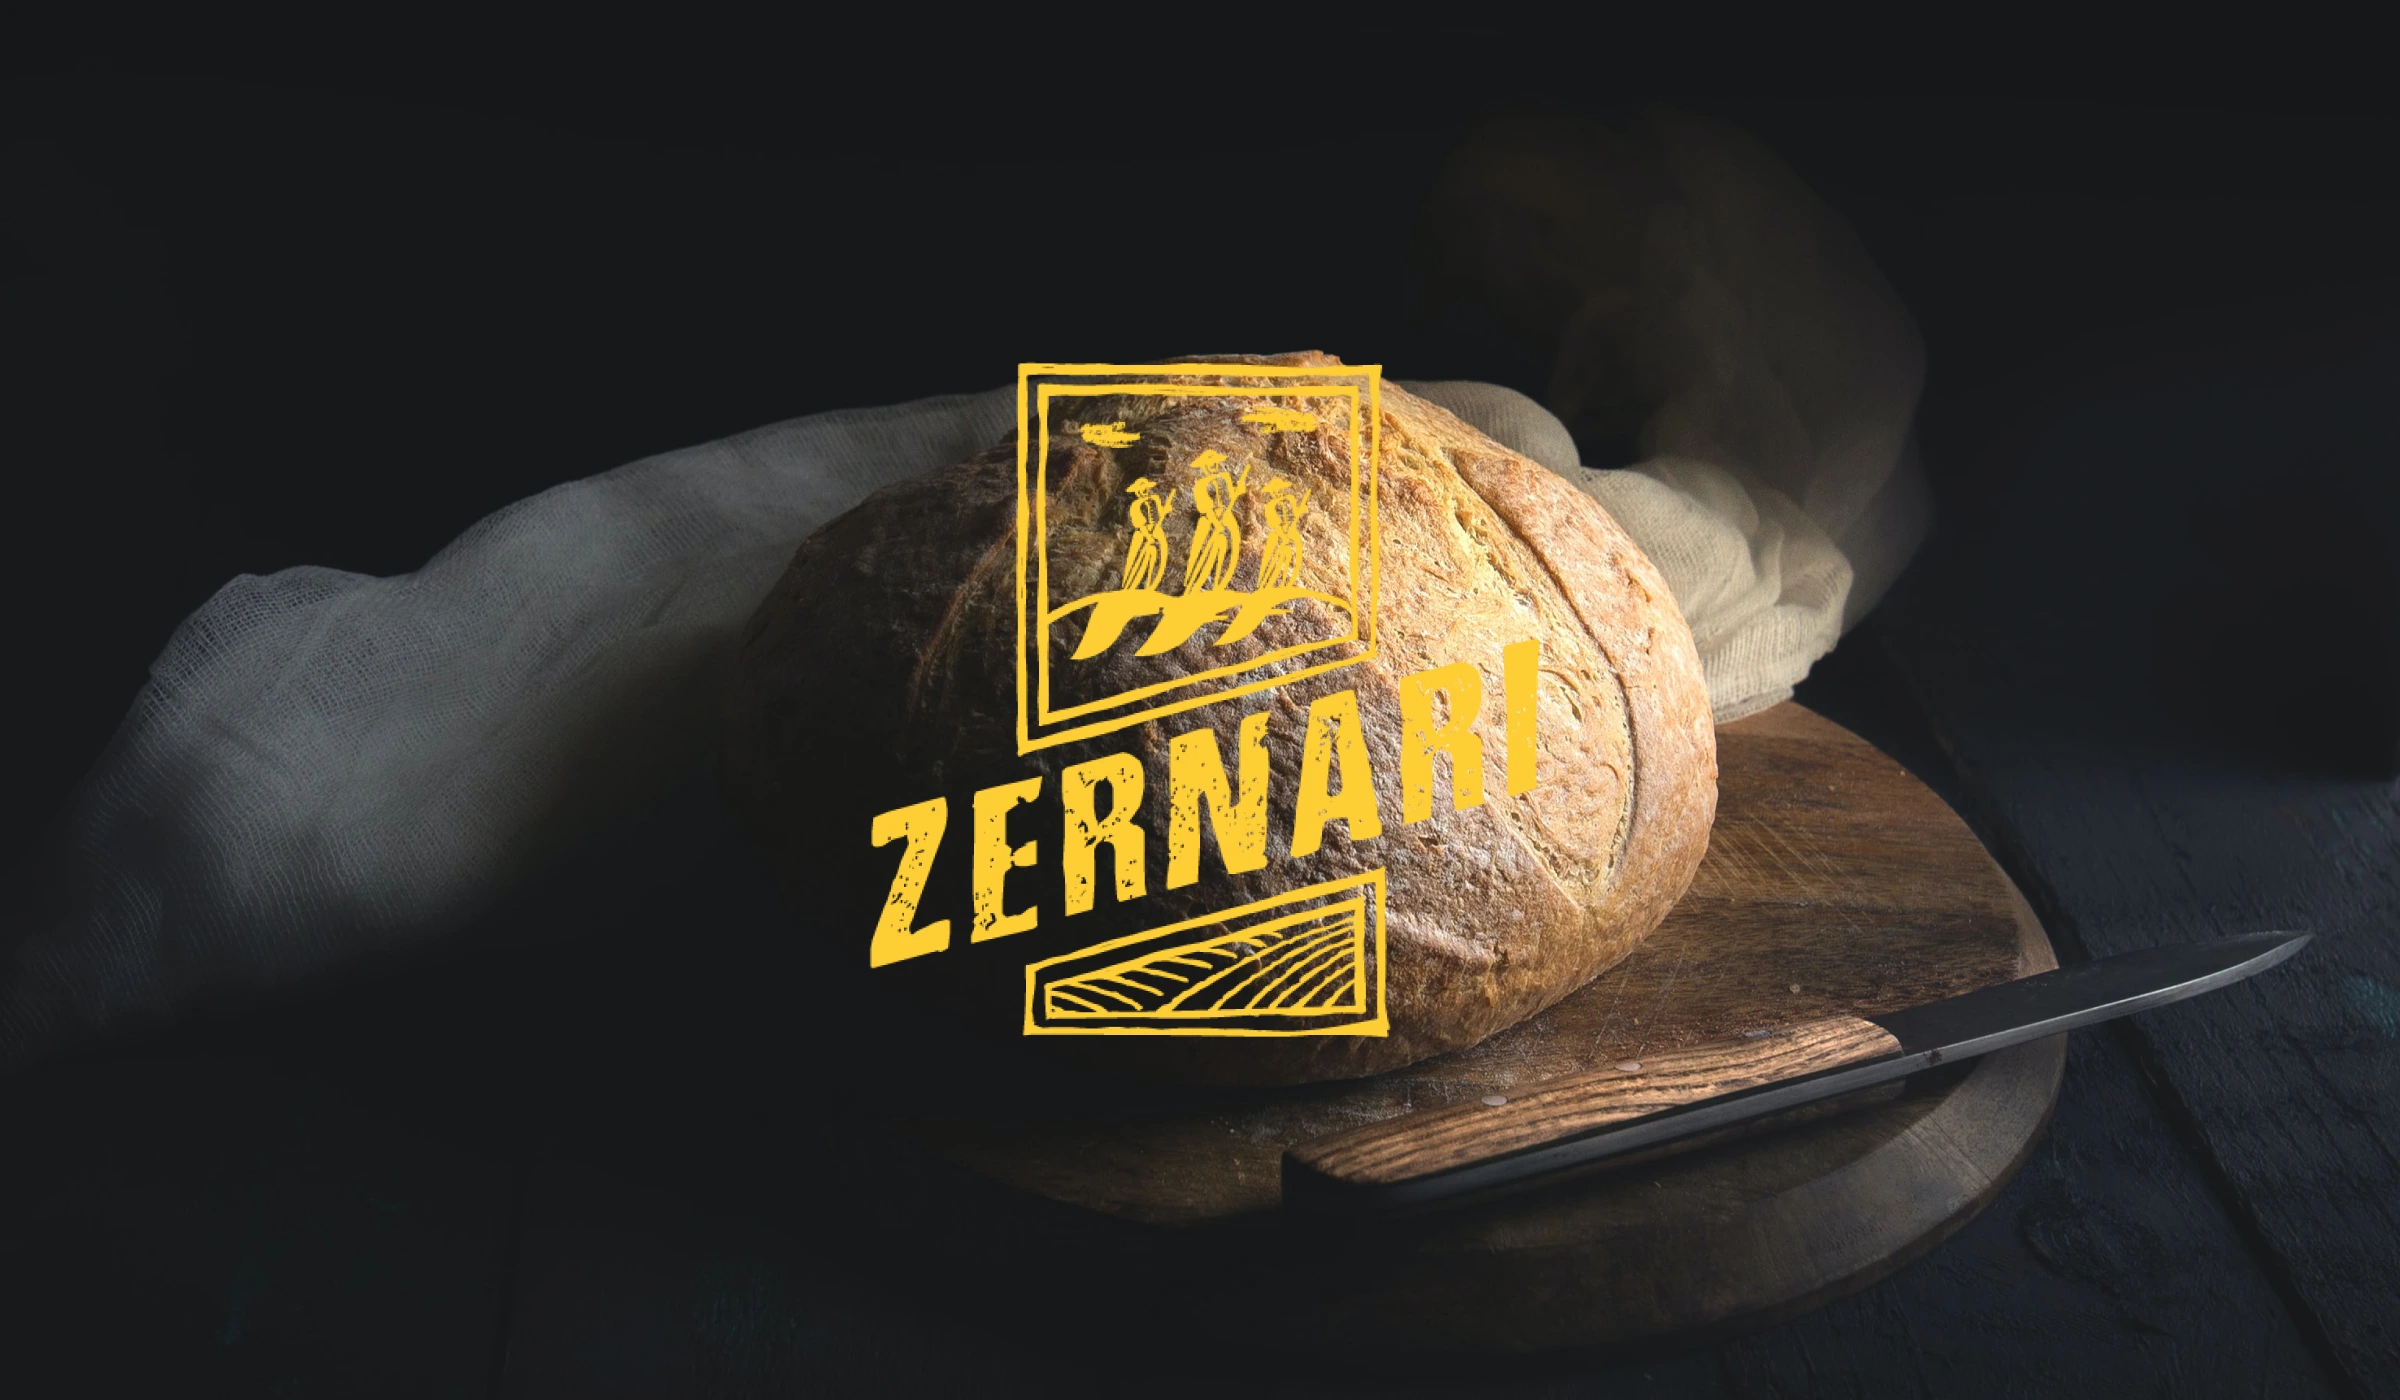 thumbnail for Online grain store zernari 